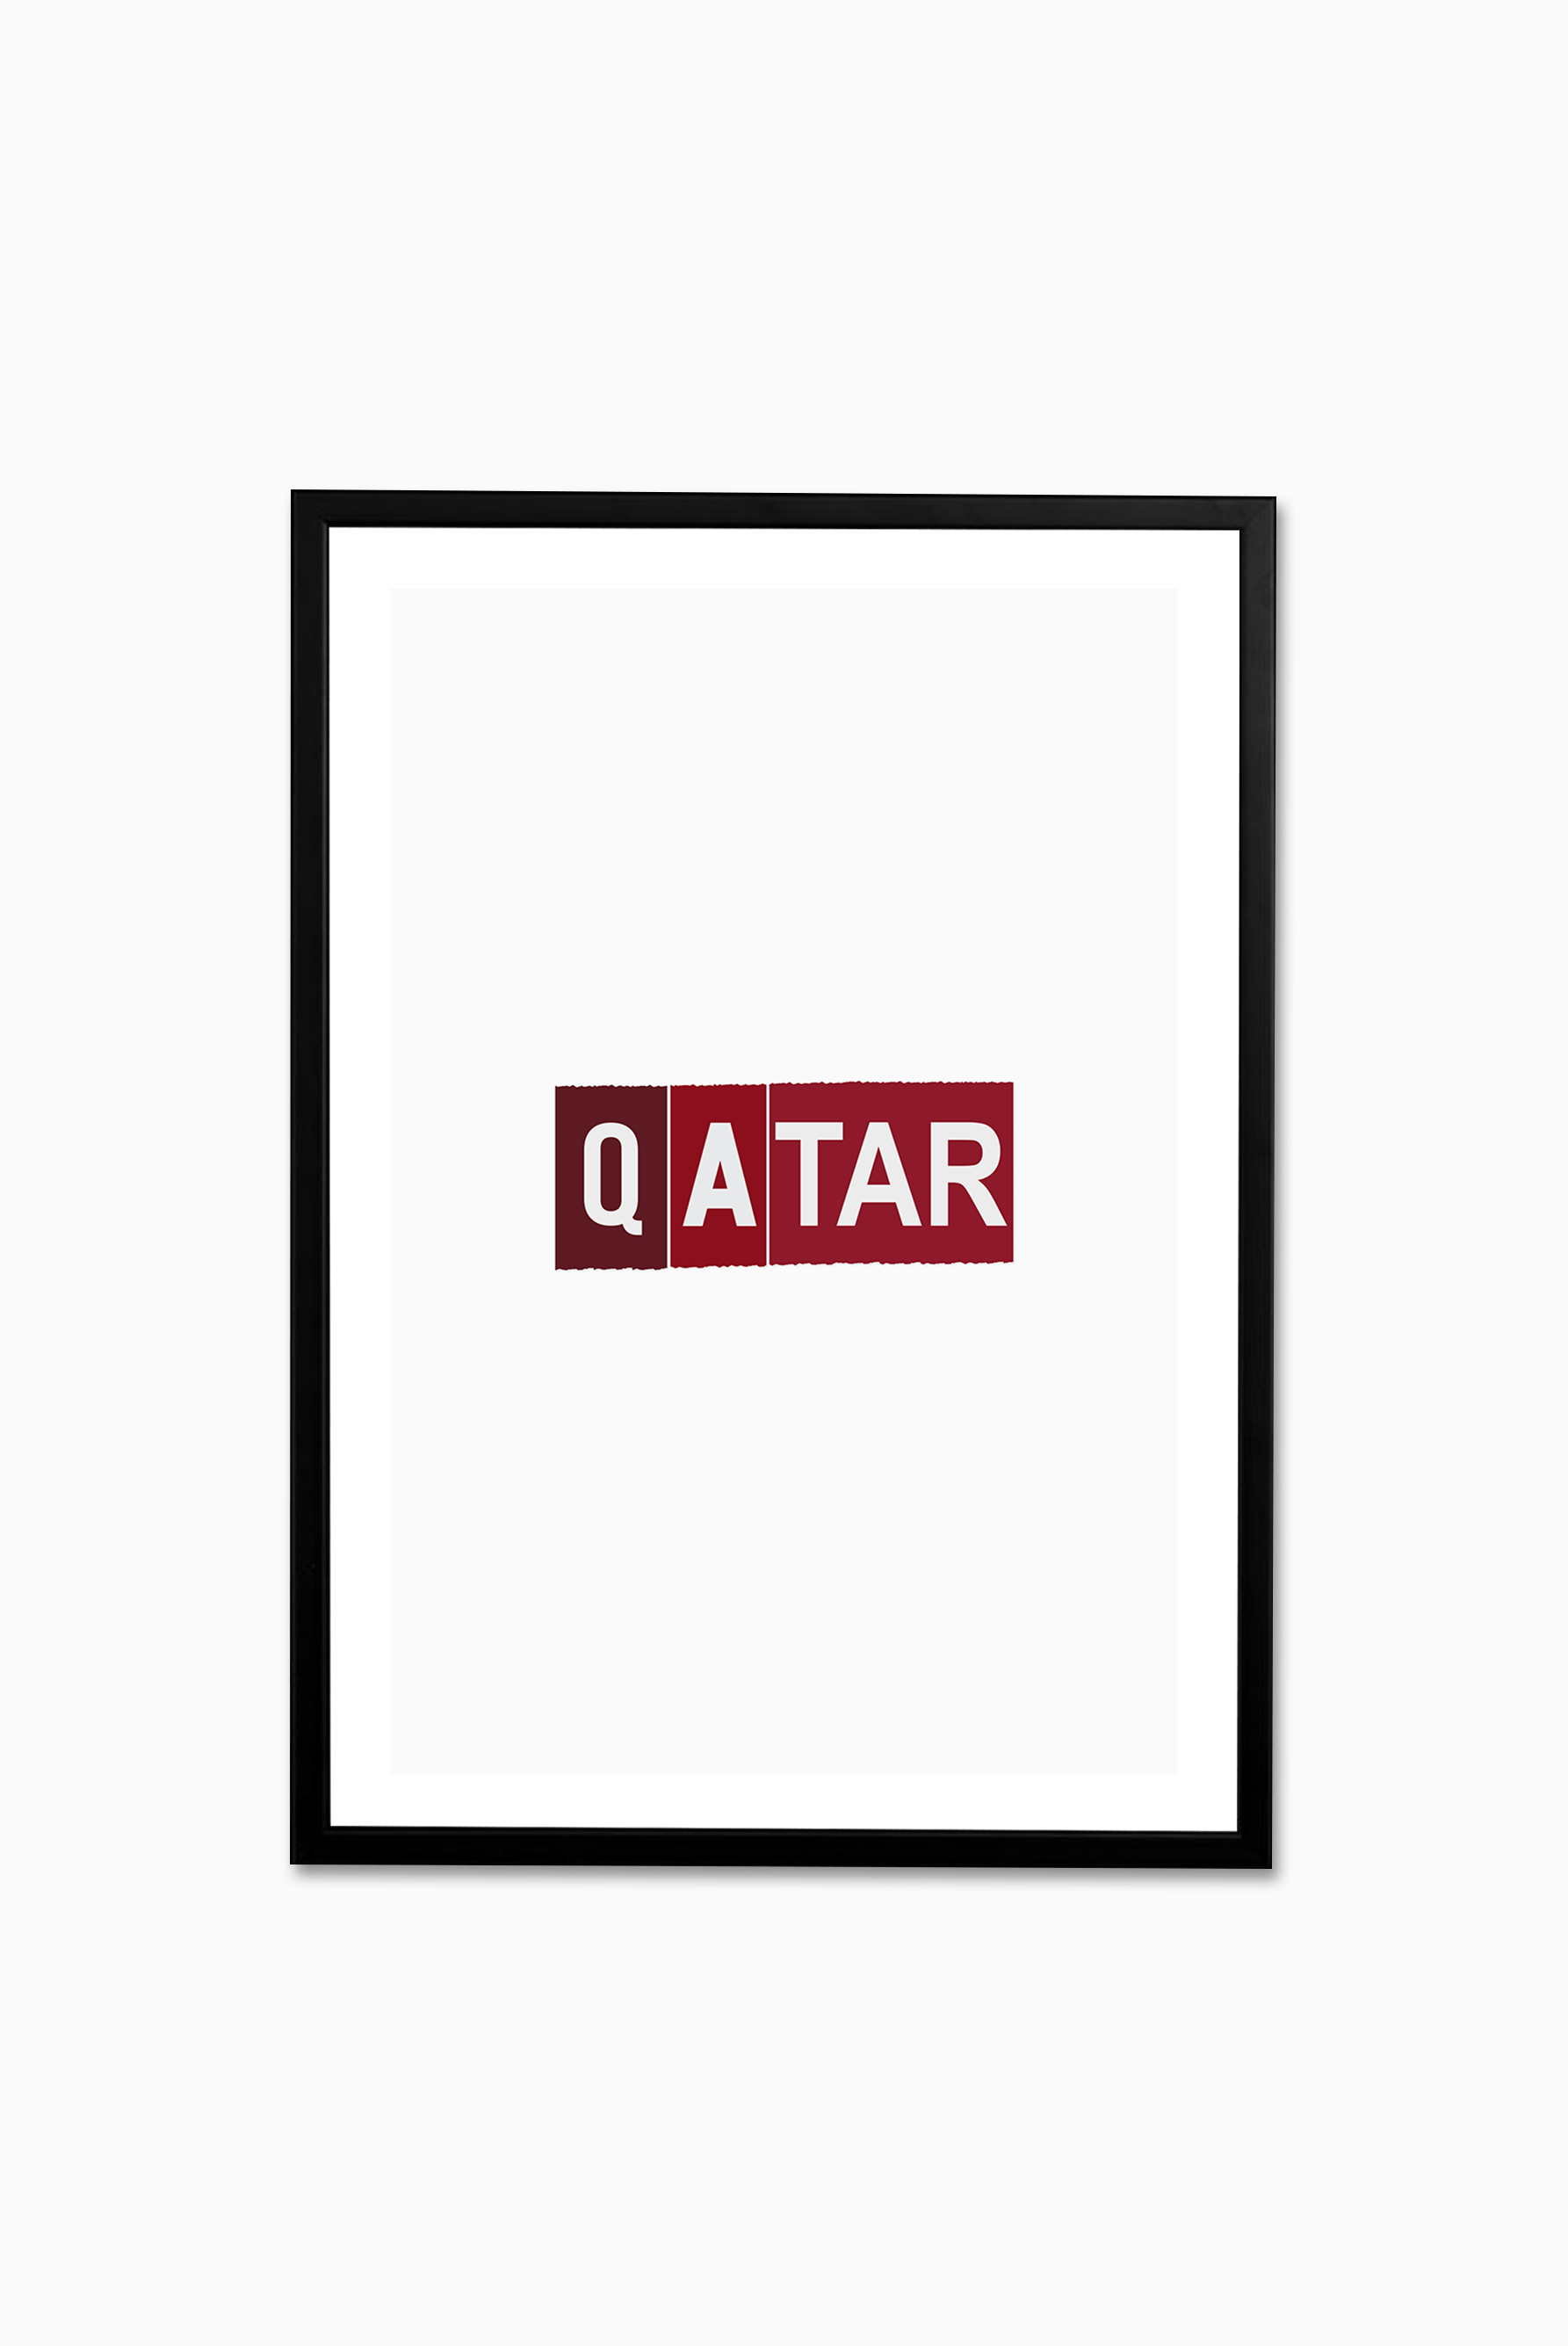 Qatar Wear and Tear / Print